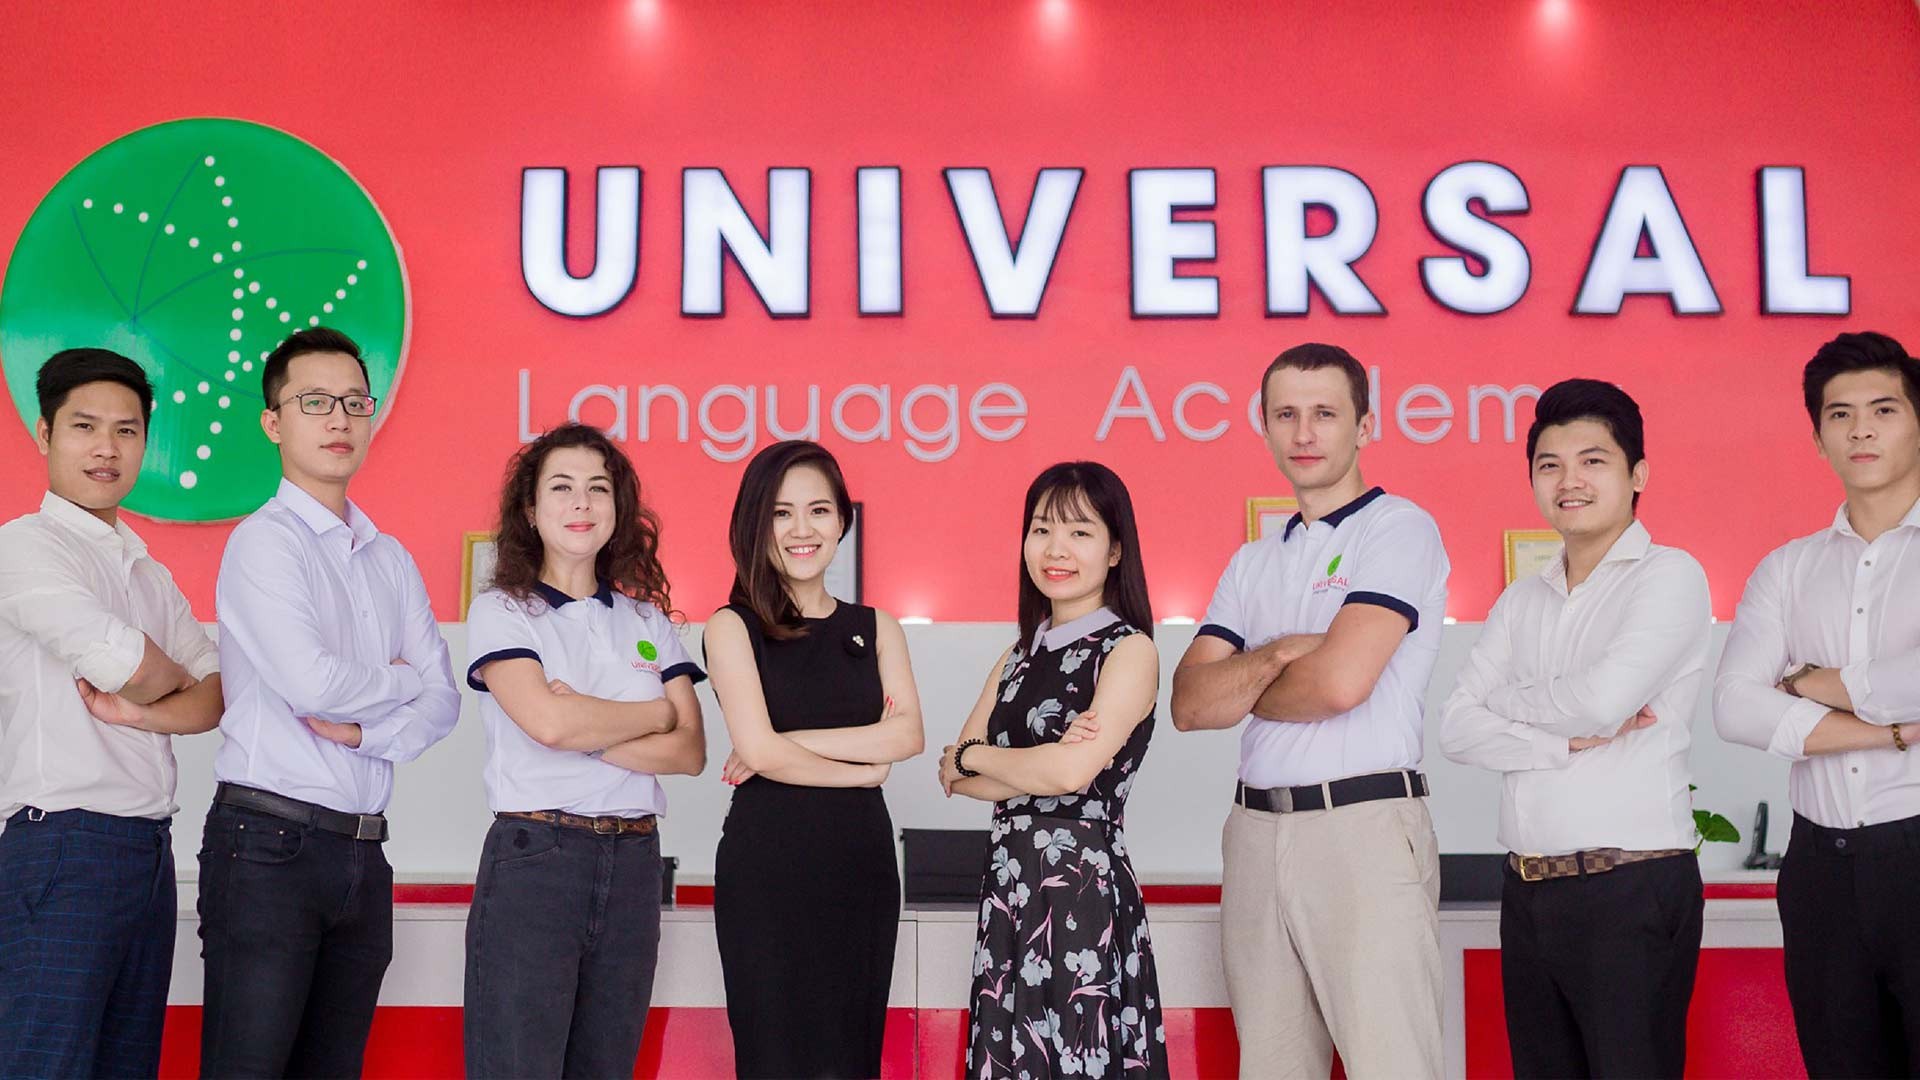 Bộ tứ siêu đẳng: Bí mật giúp hơn 1000 học viên Universal Language Academy chinh phục IELTS